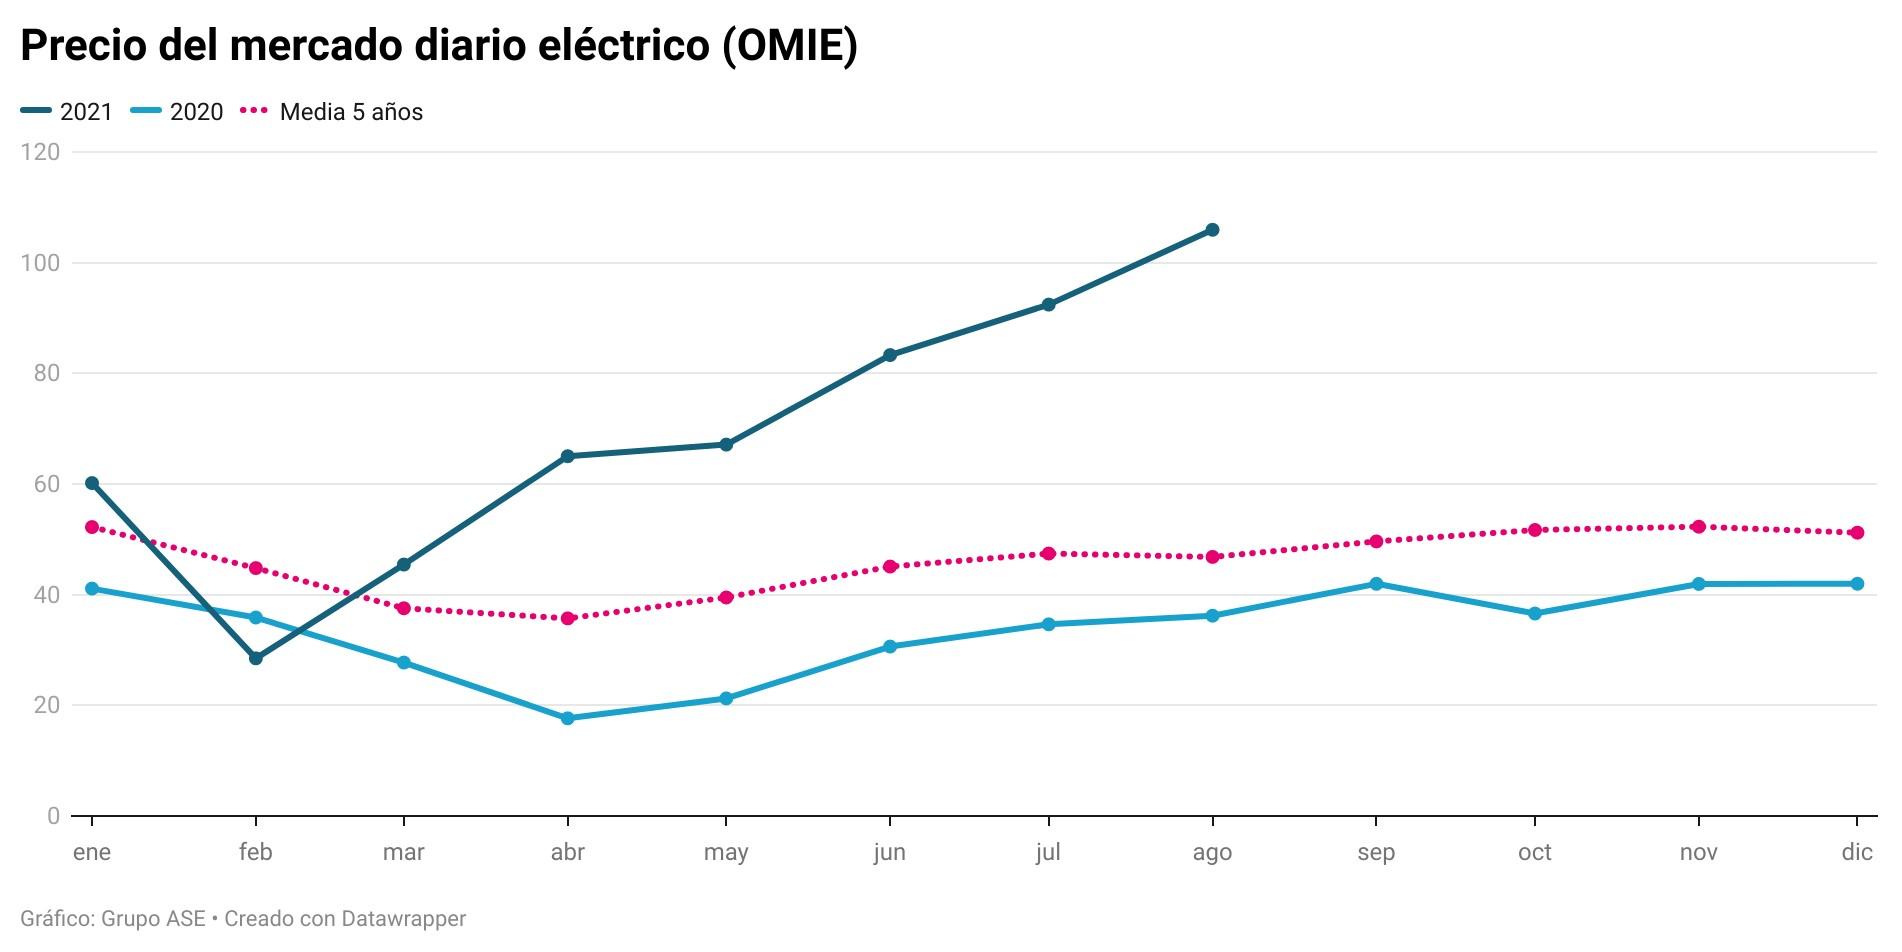 Gráfico precio mercado diario eléctrico (OMIE). Fuente Grupo ASE